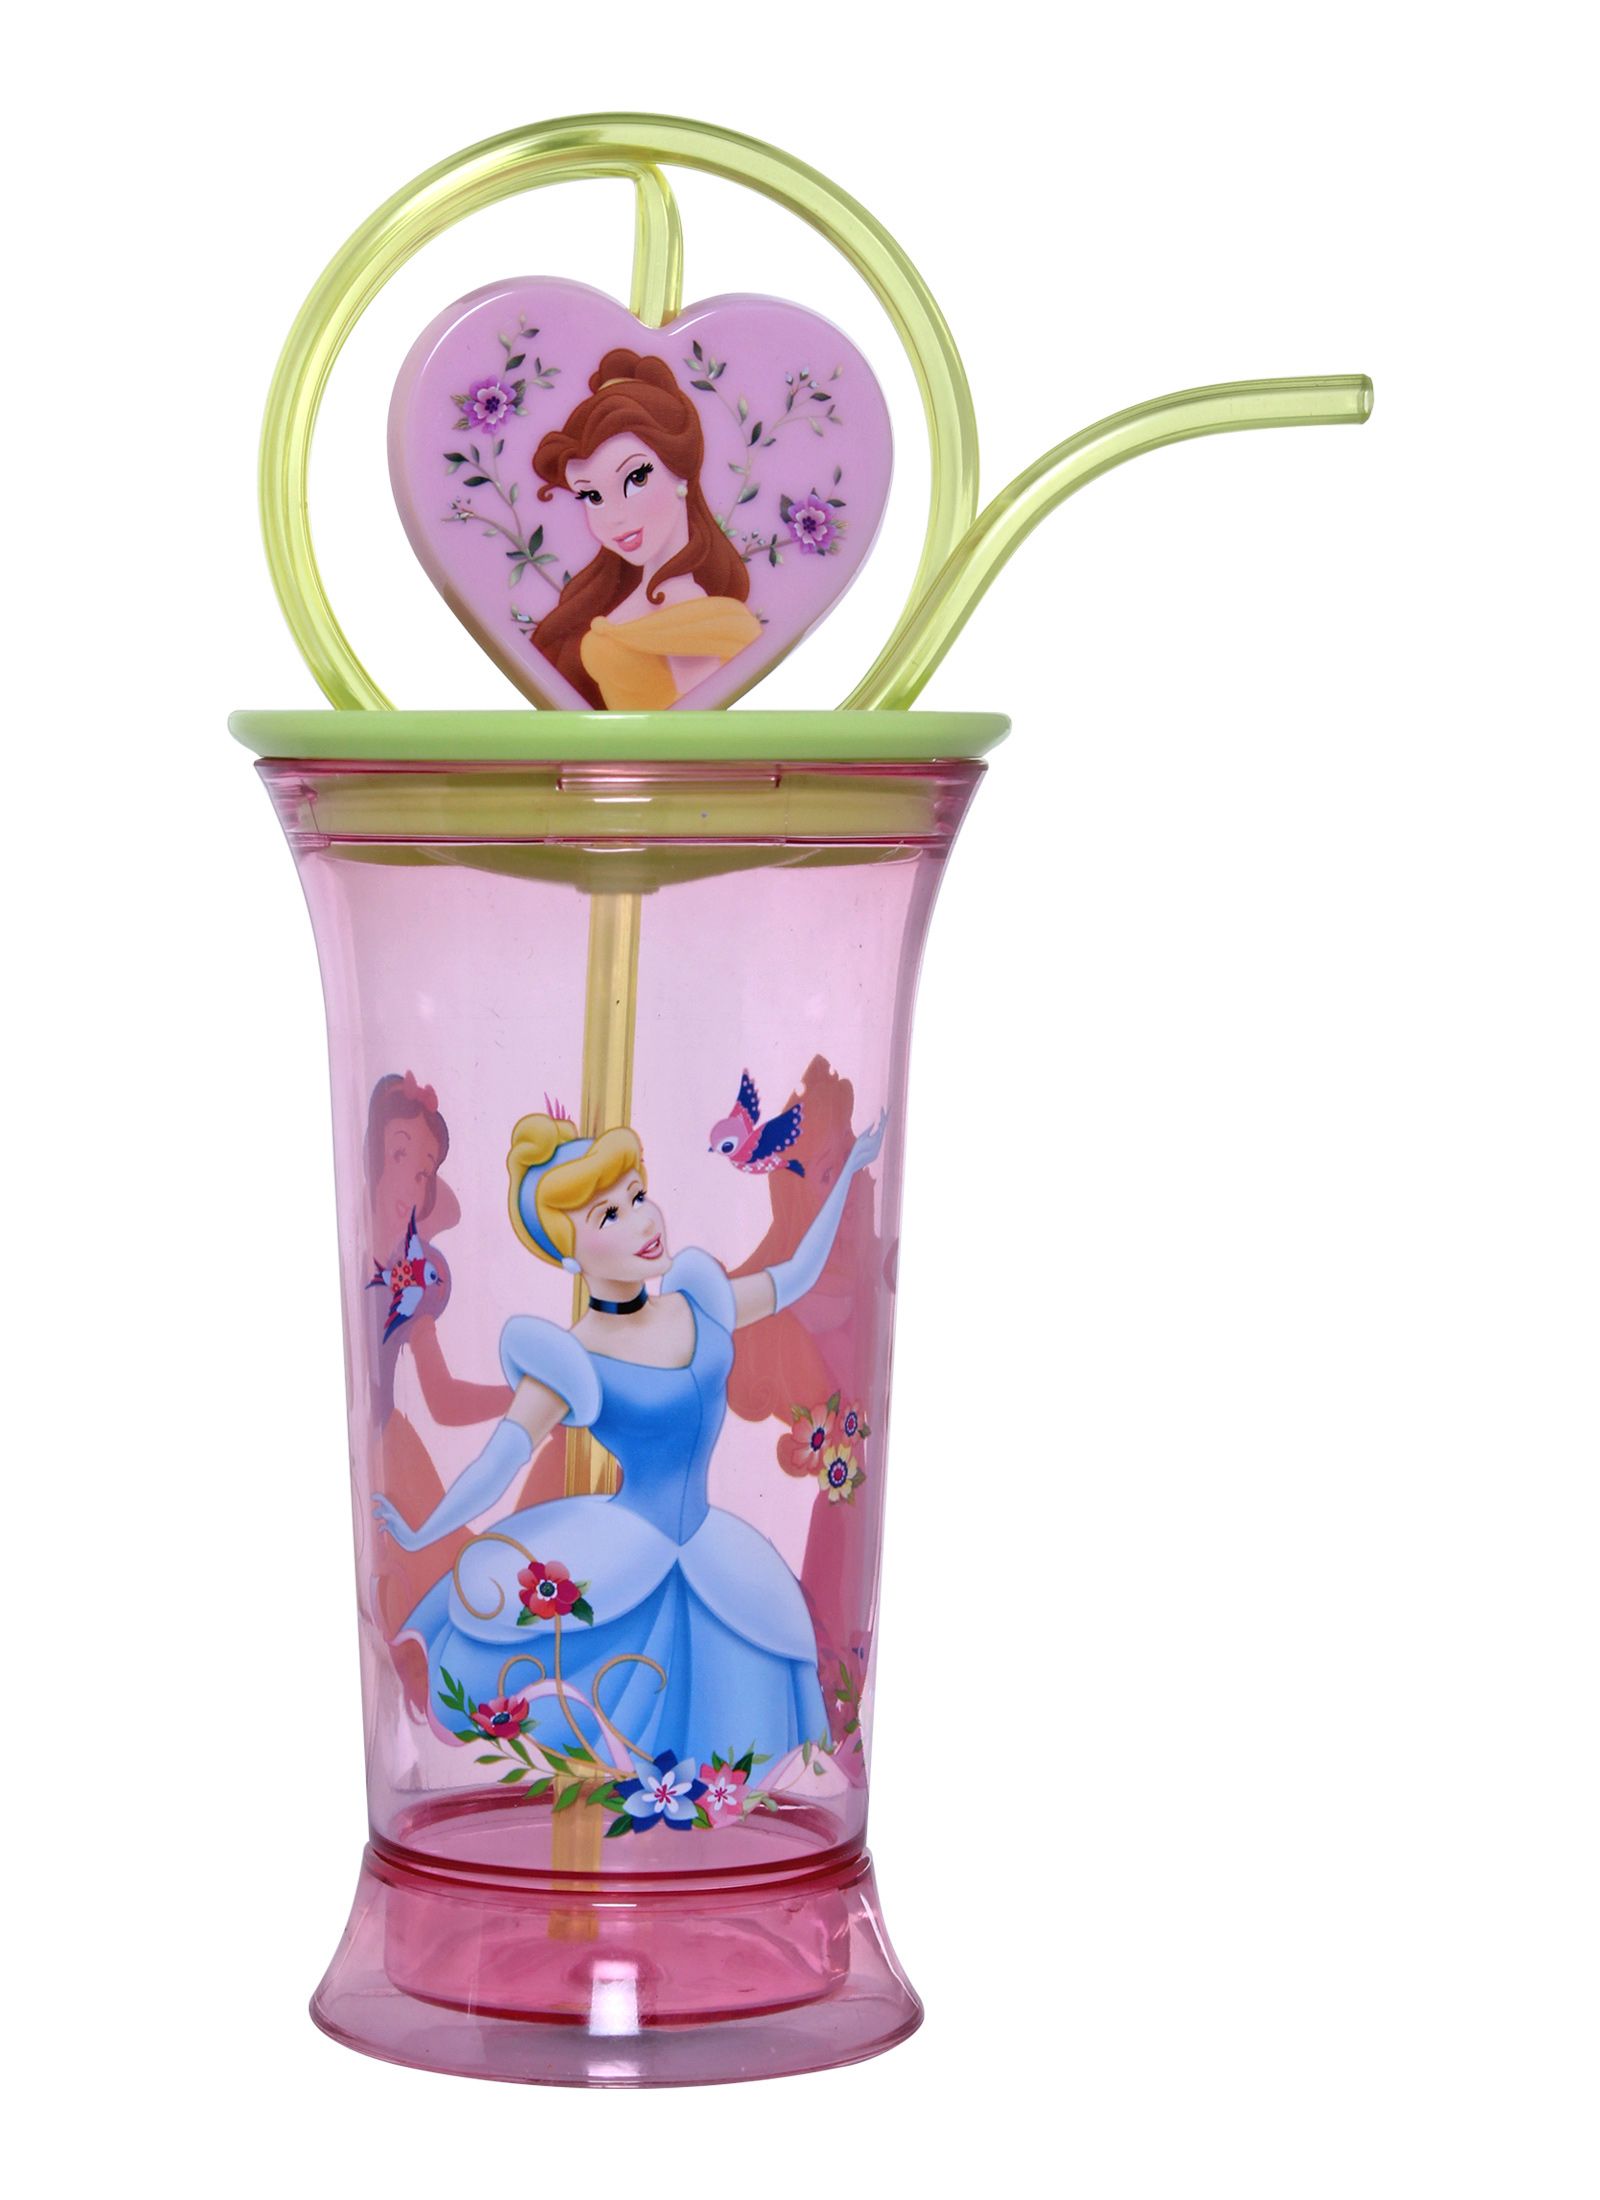 Spinning Tumbler - Disney Princess